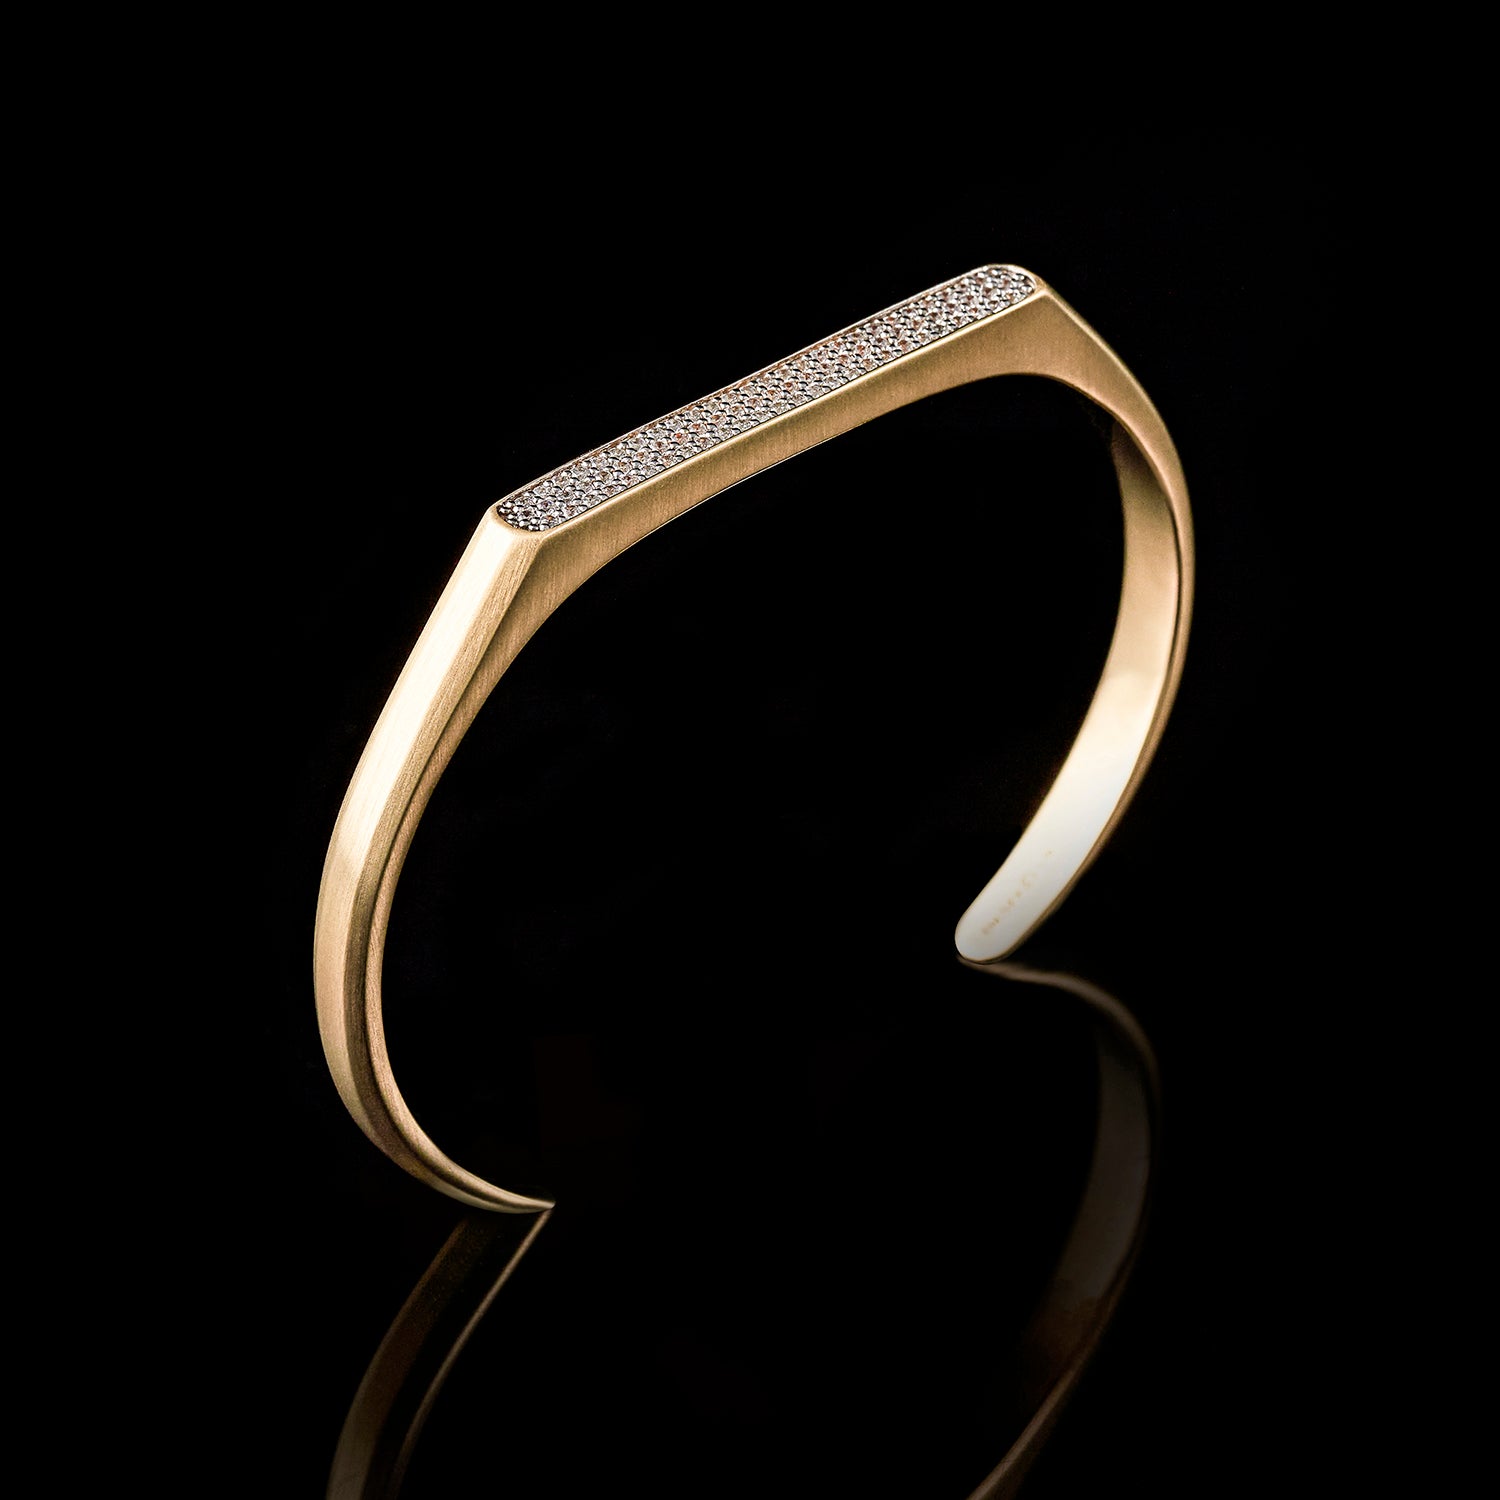 Omega 18K Gold Cuff Bracelet | Mens Gold Cuff Bracelets | Azuro Cuff Jewelry S ( 16.1 - 17.8 cm )